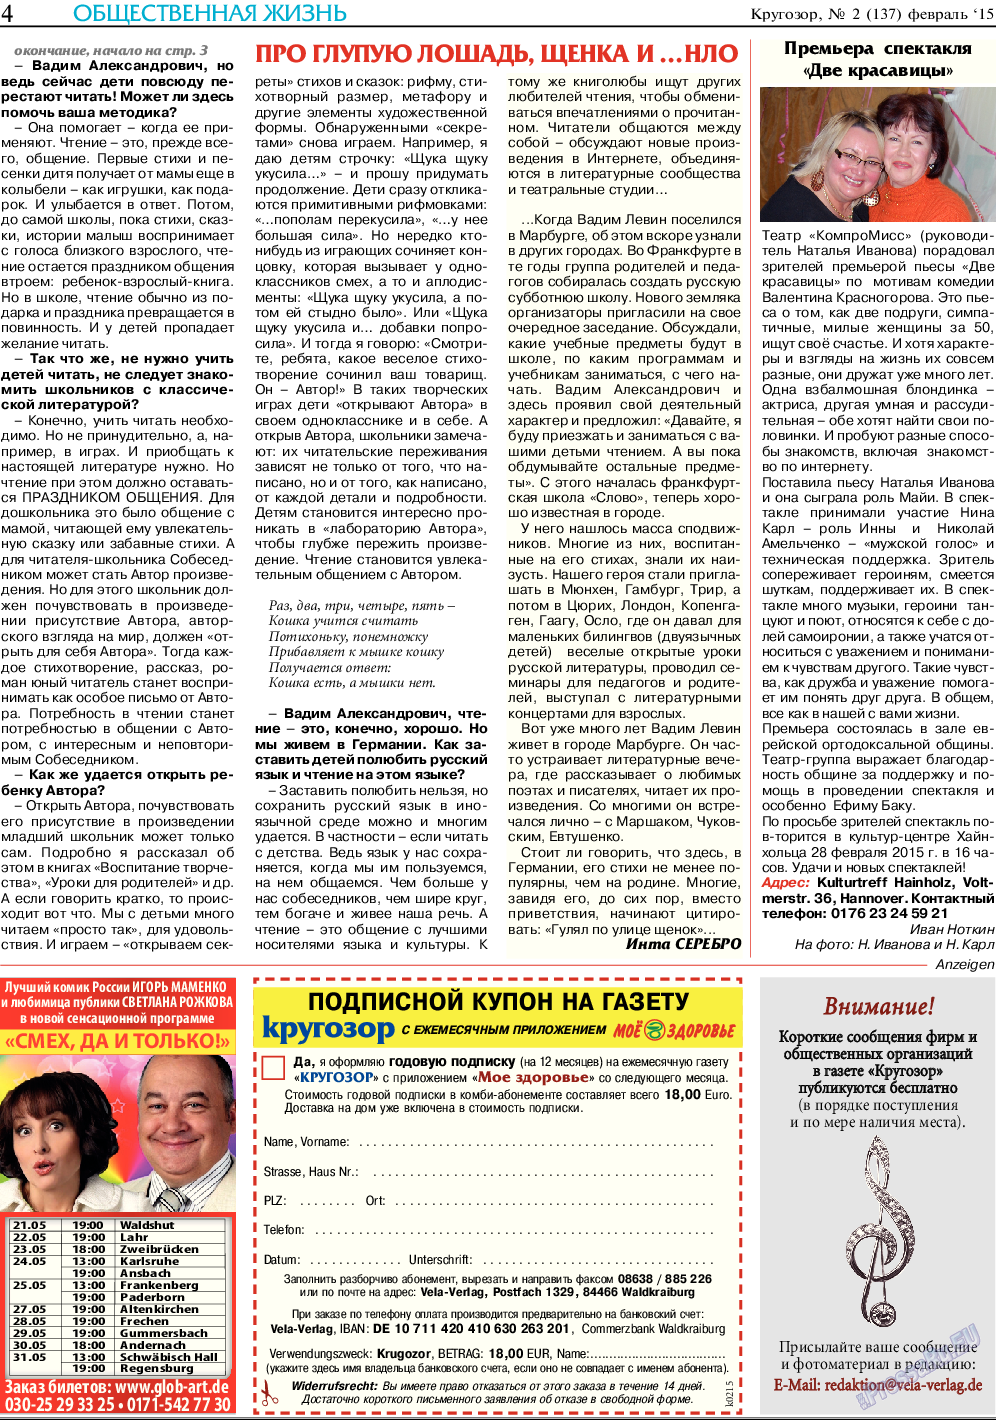 Кругозор, газета. 2015 №2 стр.4